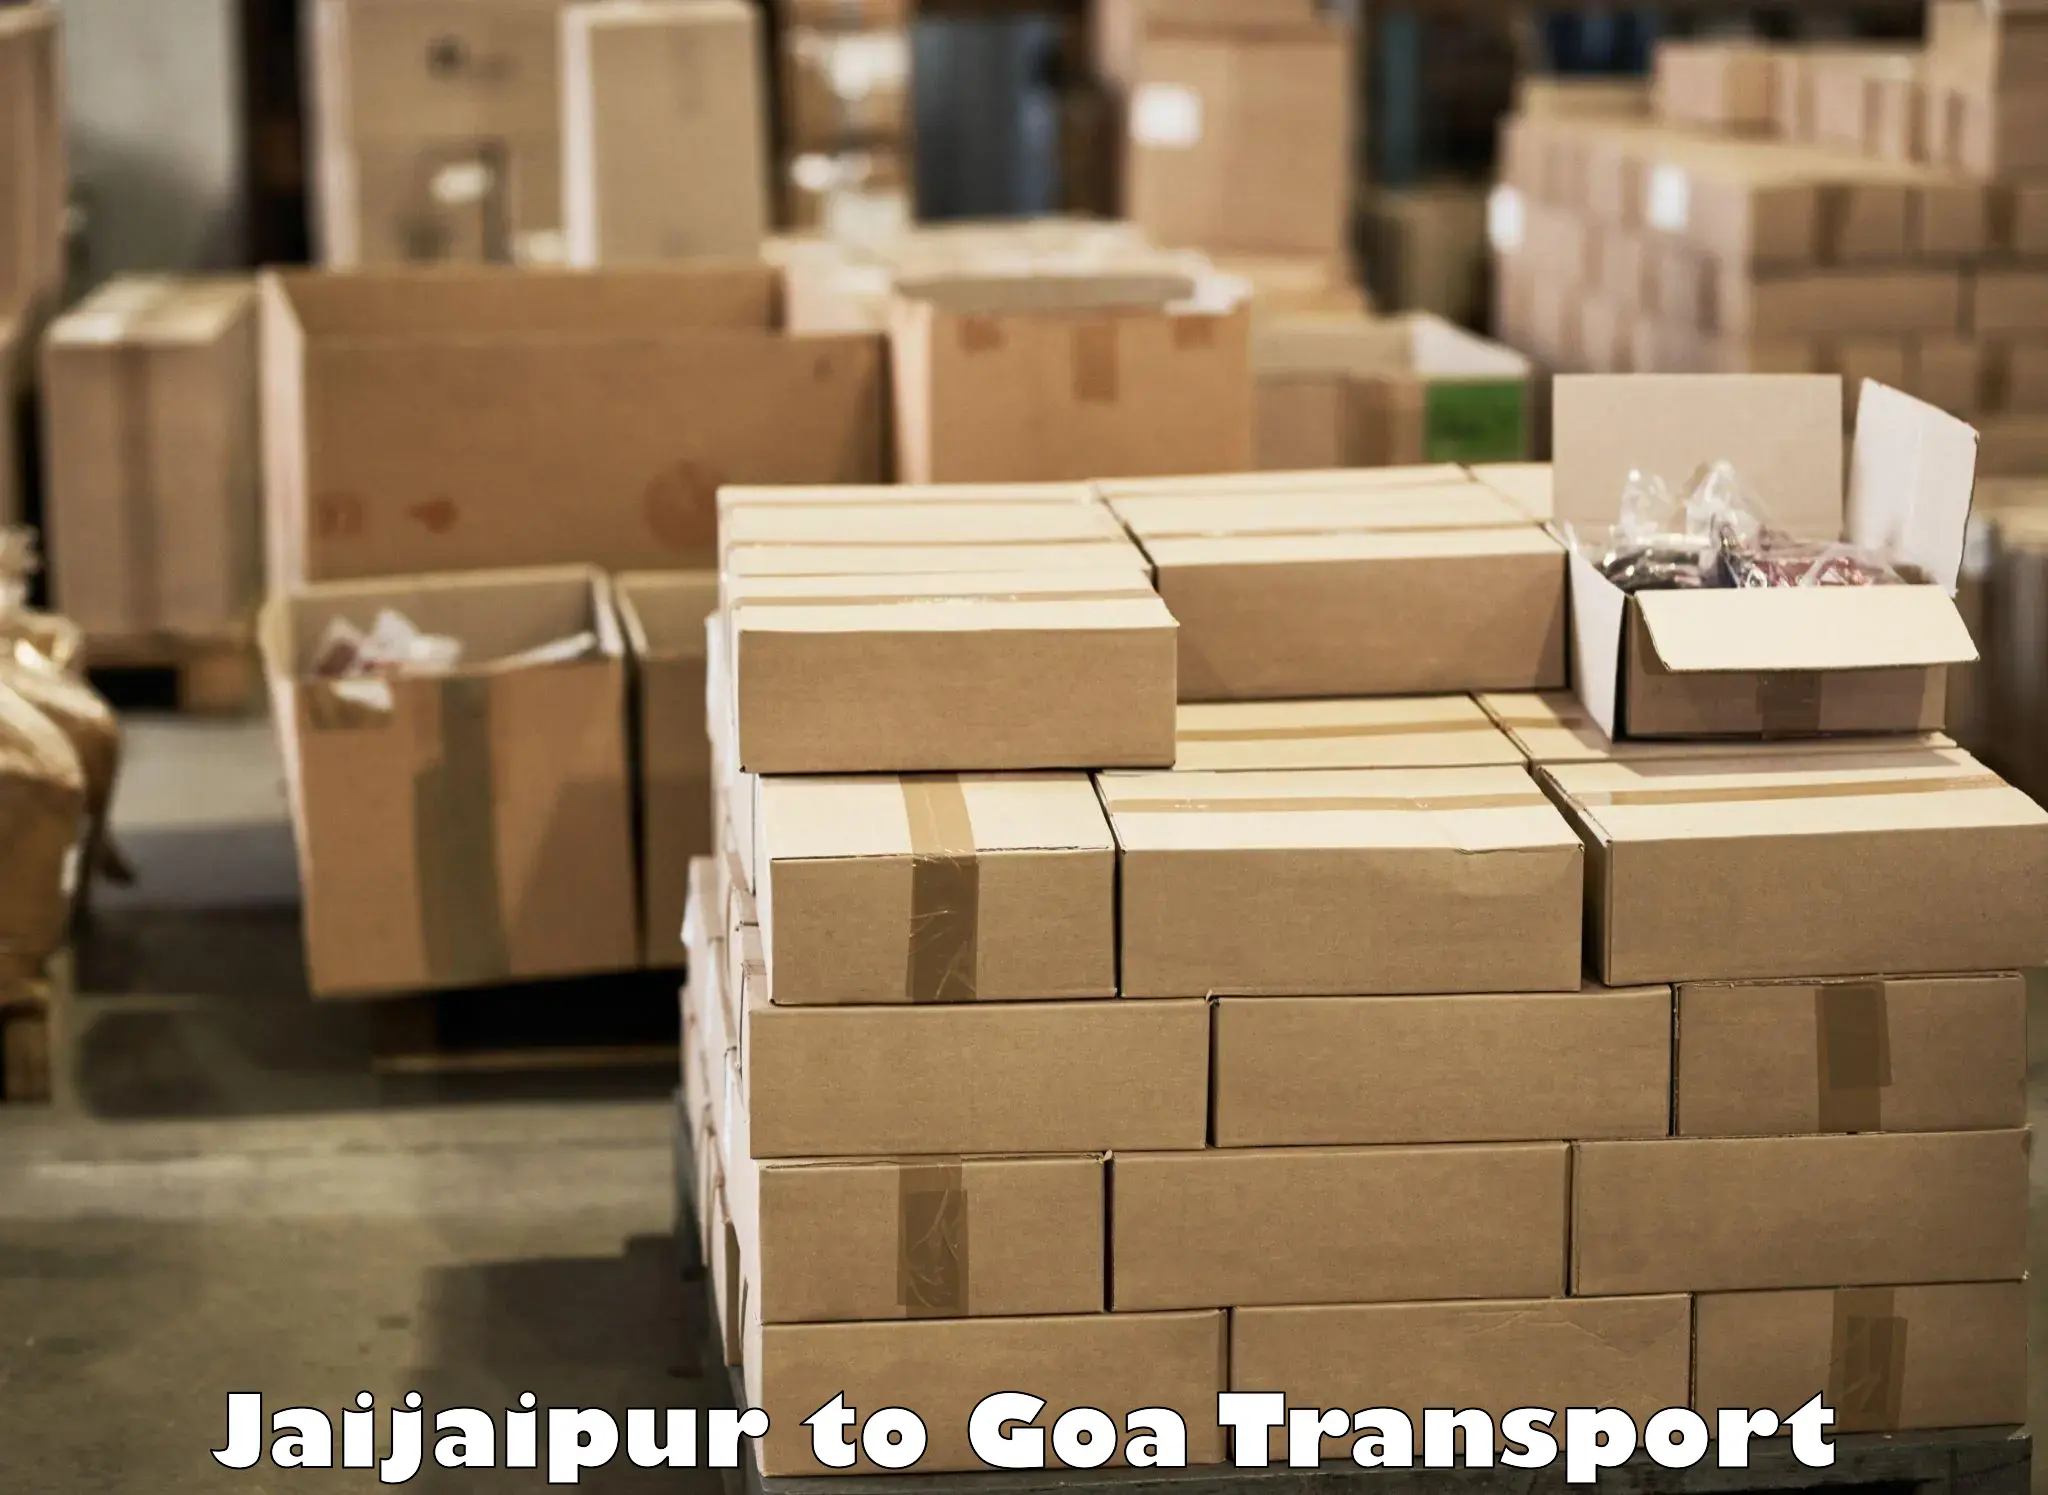 Daily transport service Jaijaipur to Sanvordem